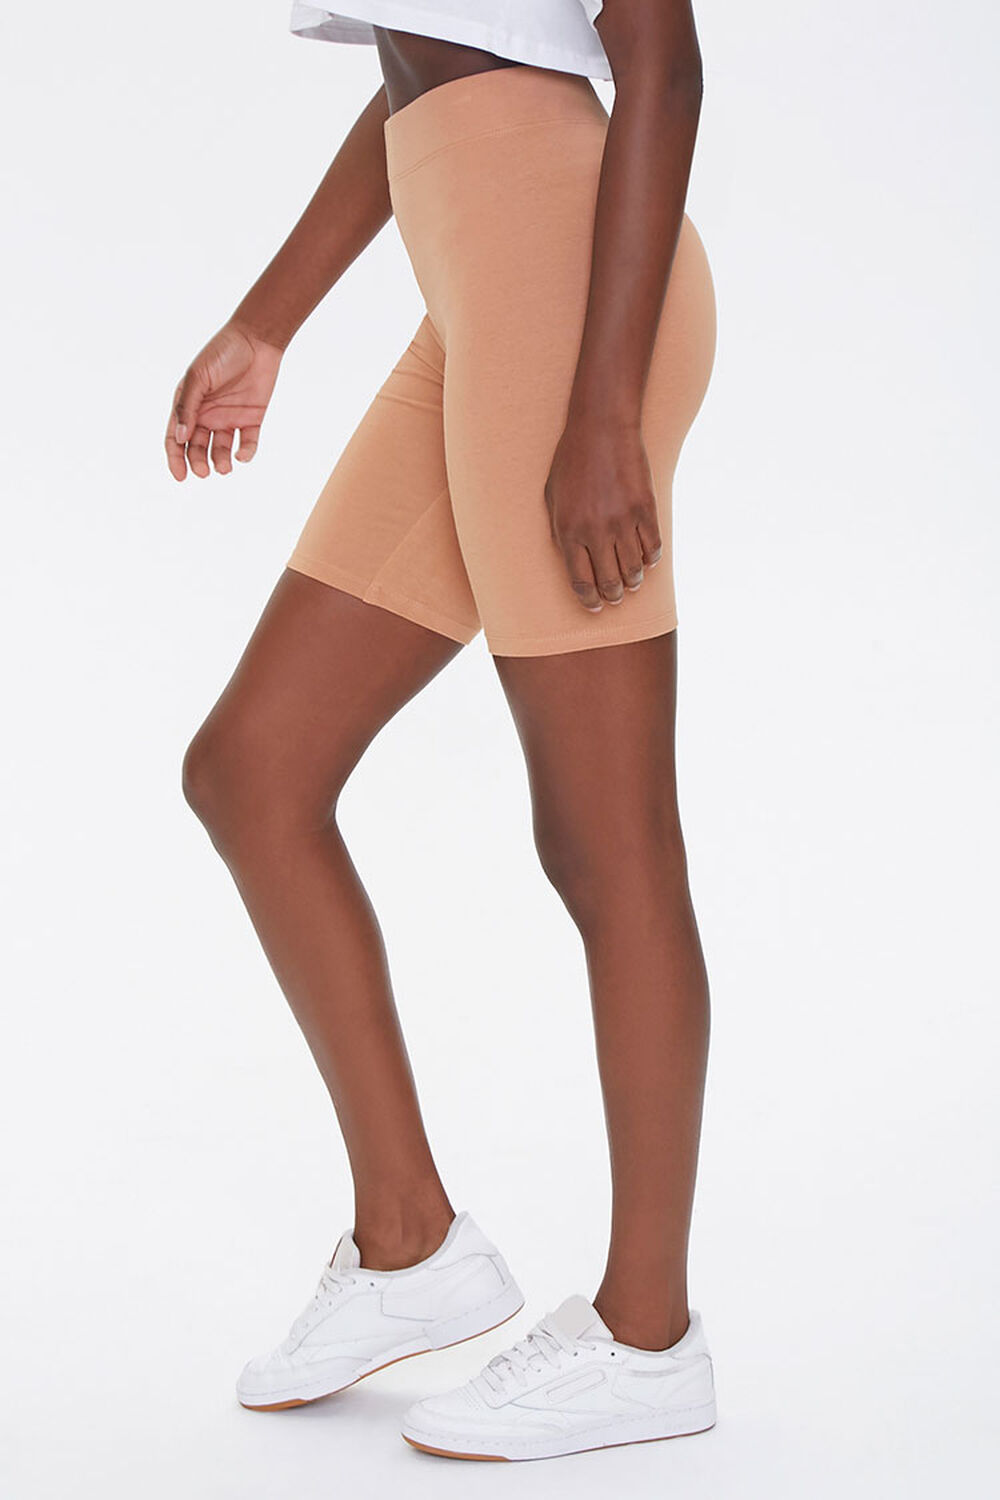 CAMEL Basic Cotton-Blend Biker Shorts, image 3